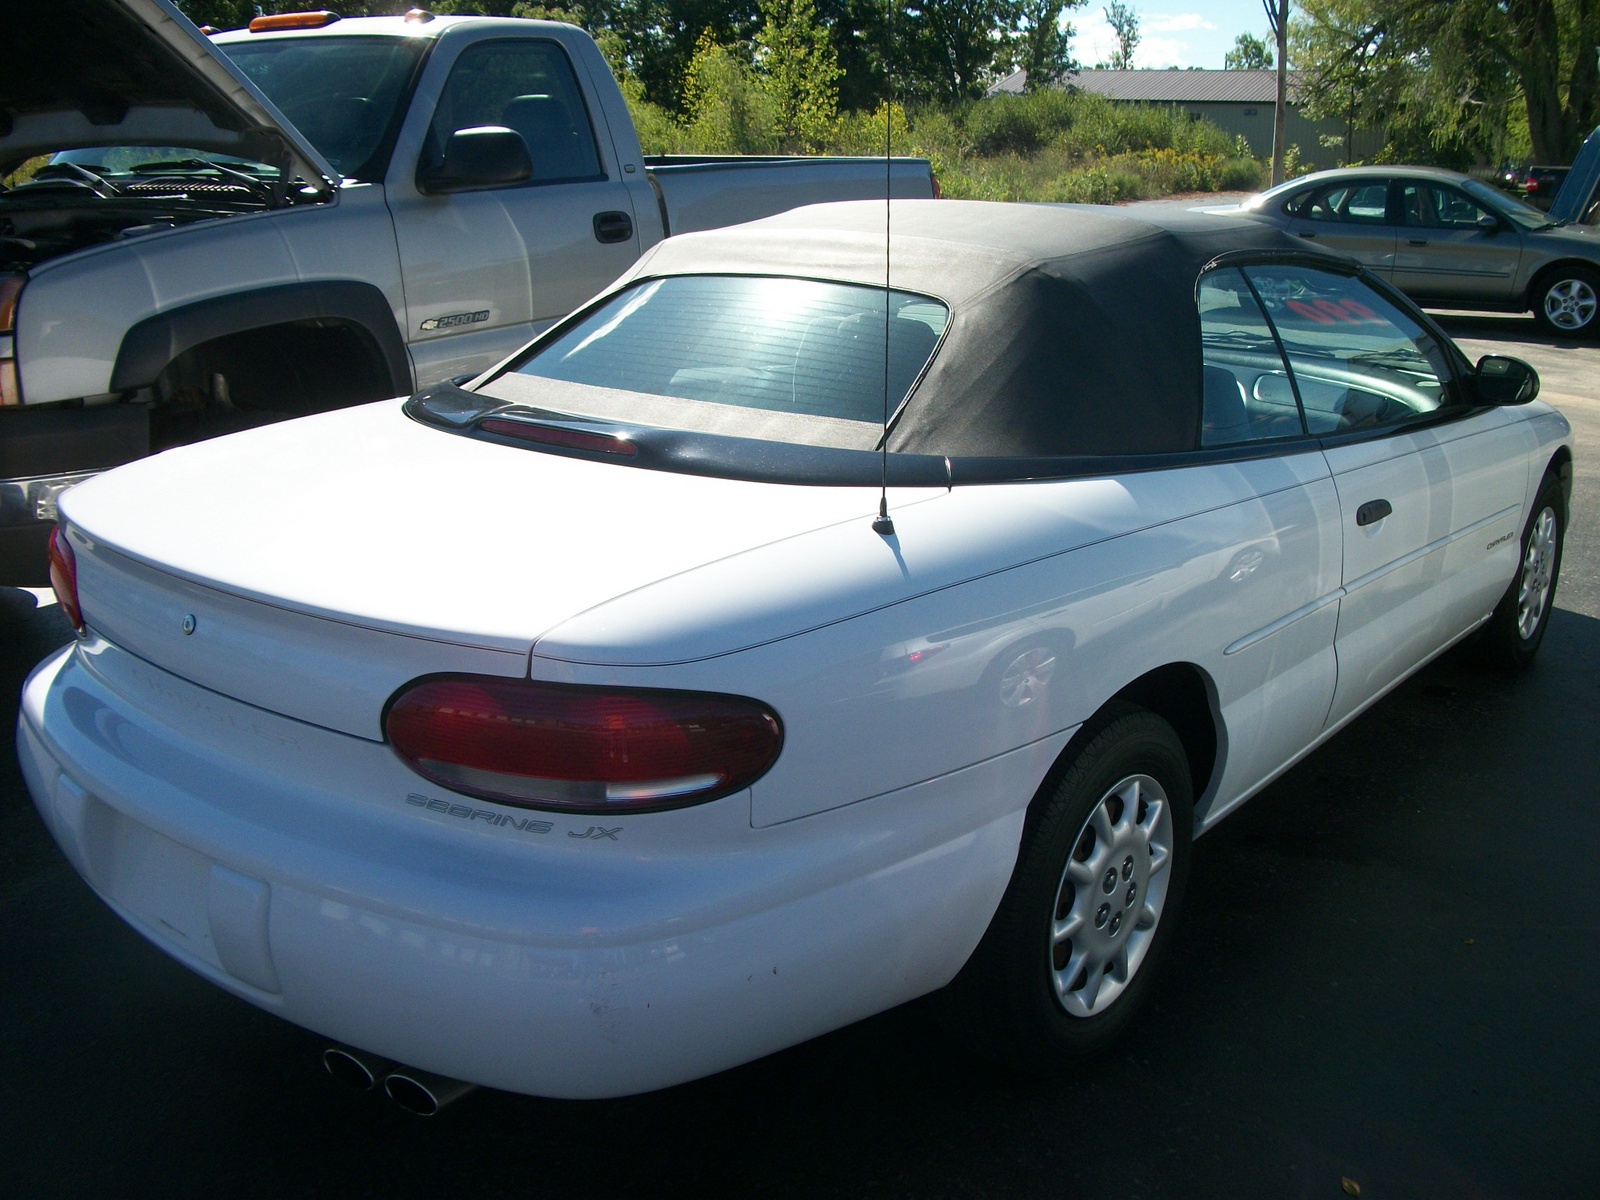 2000 Chrysler sebring convertible white #2